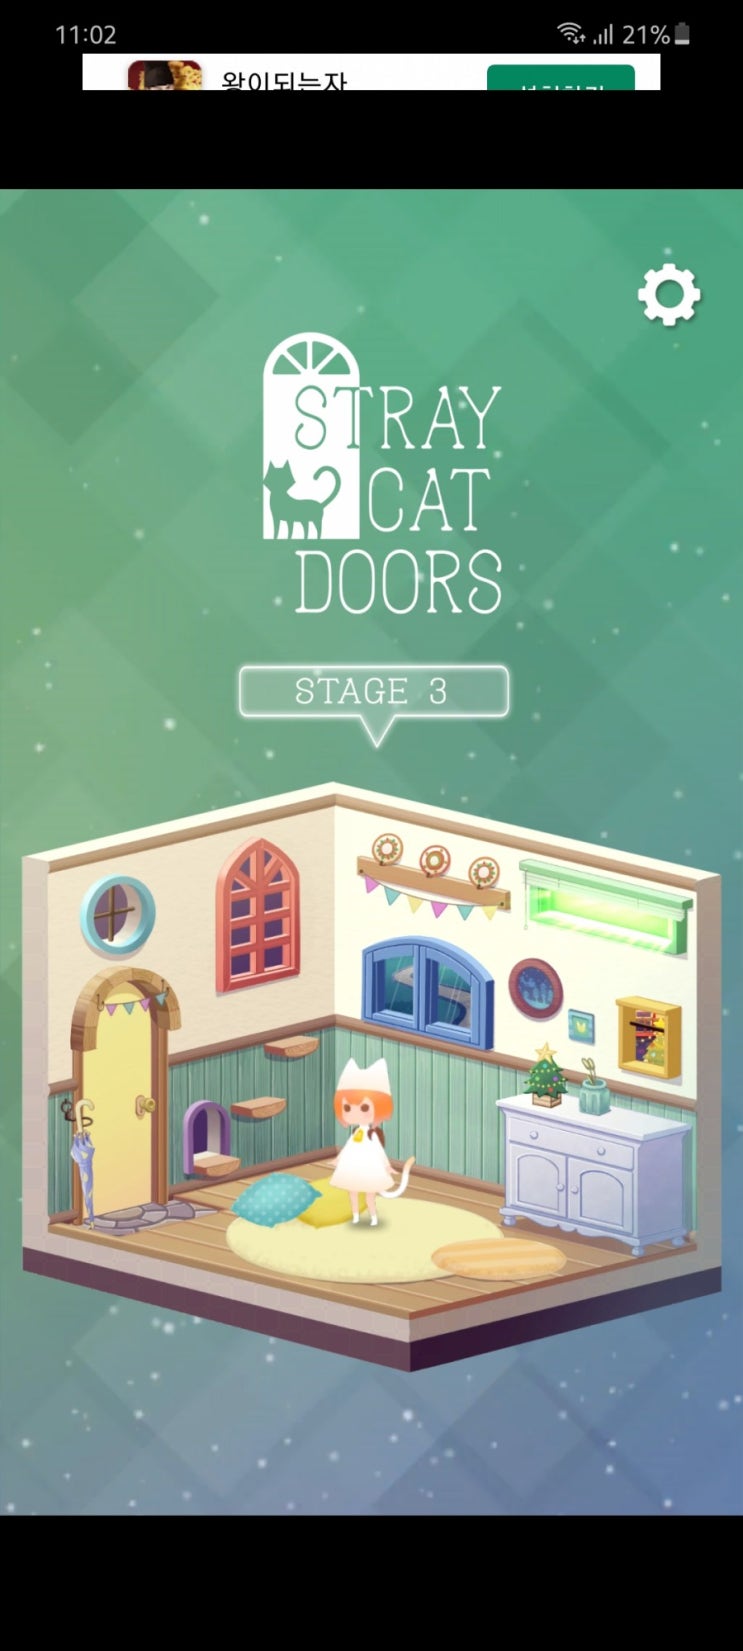 [핸드폰 게임] 'stray cat doors' /탈출게임 길잃은 고양이의 여행/ 공략 스테이지3,4